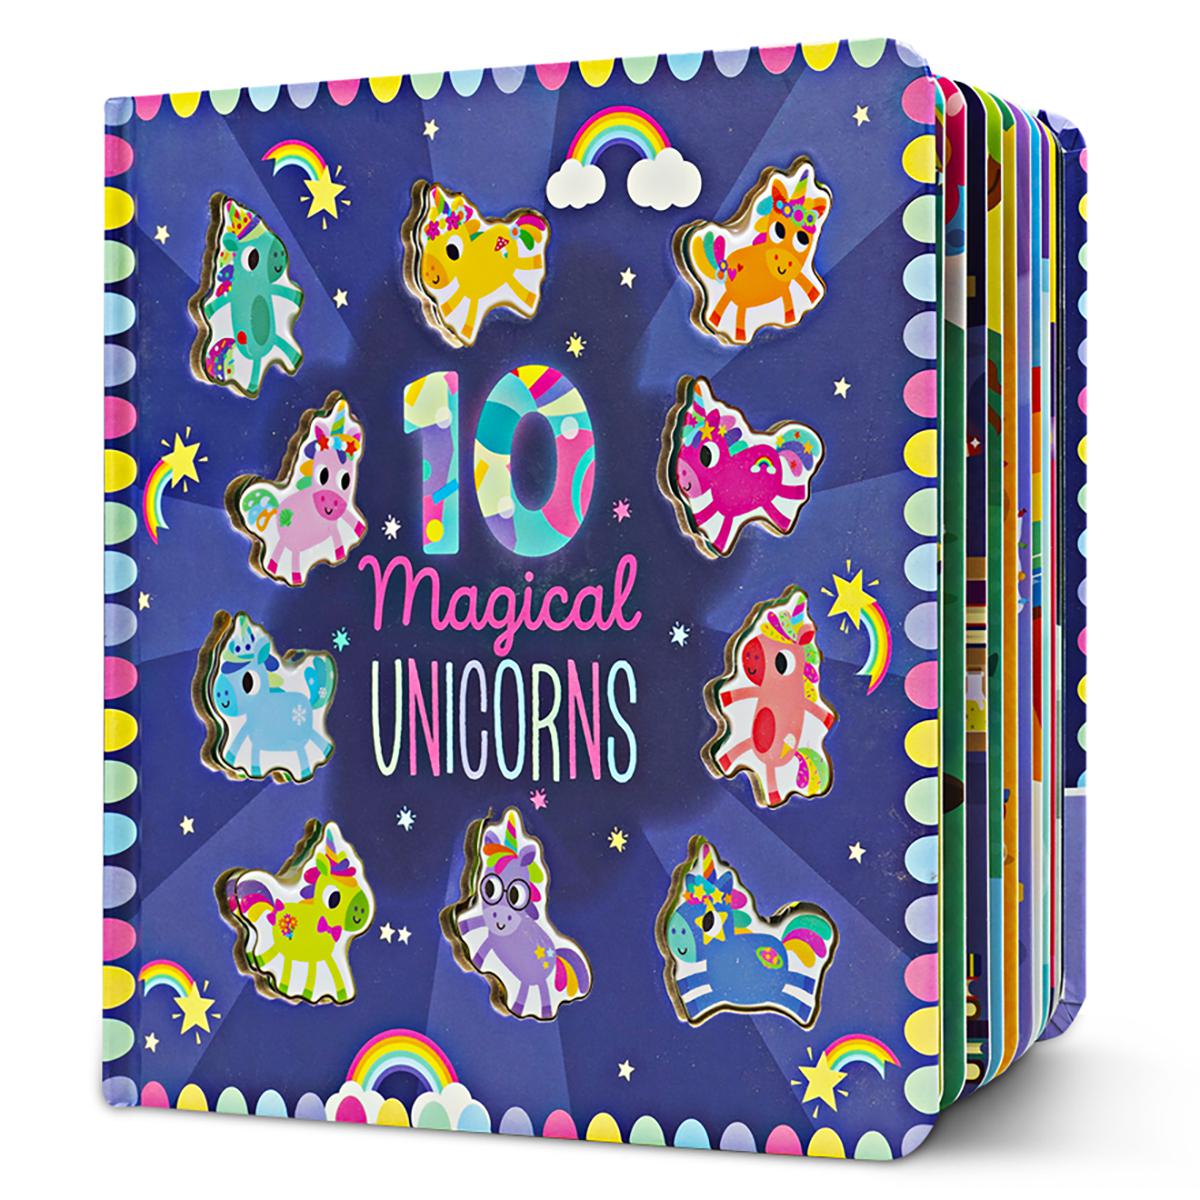  10 Magical Unicorns 